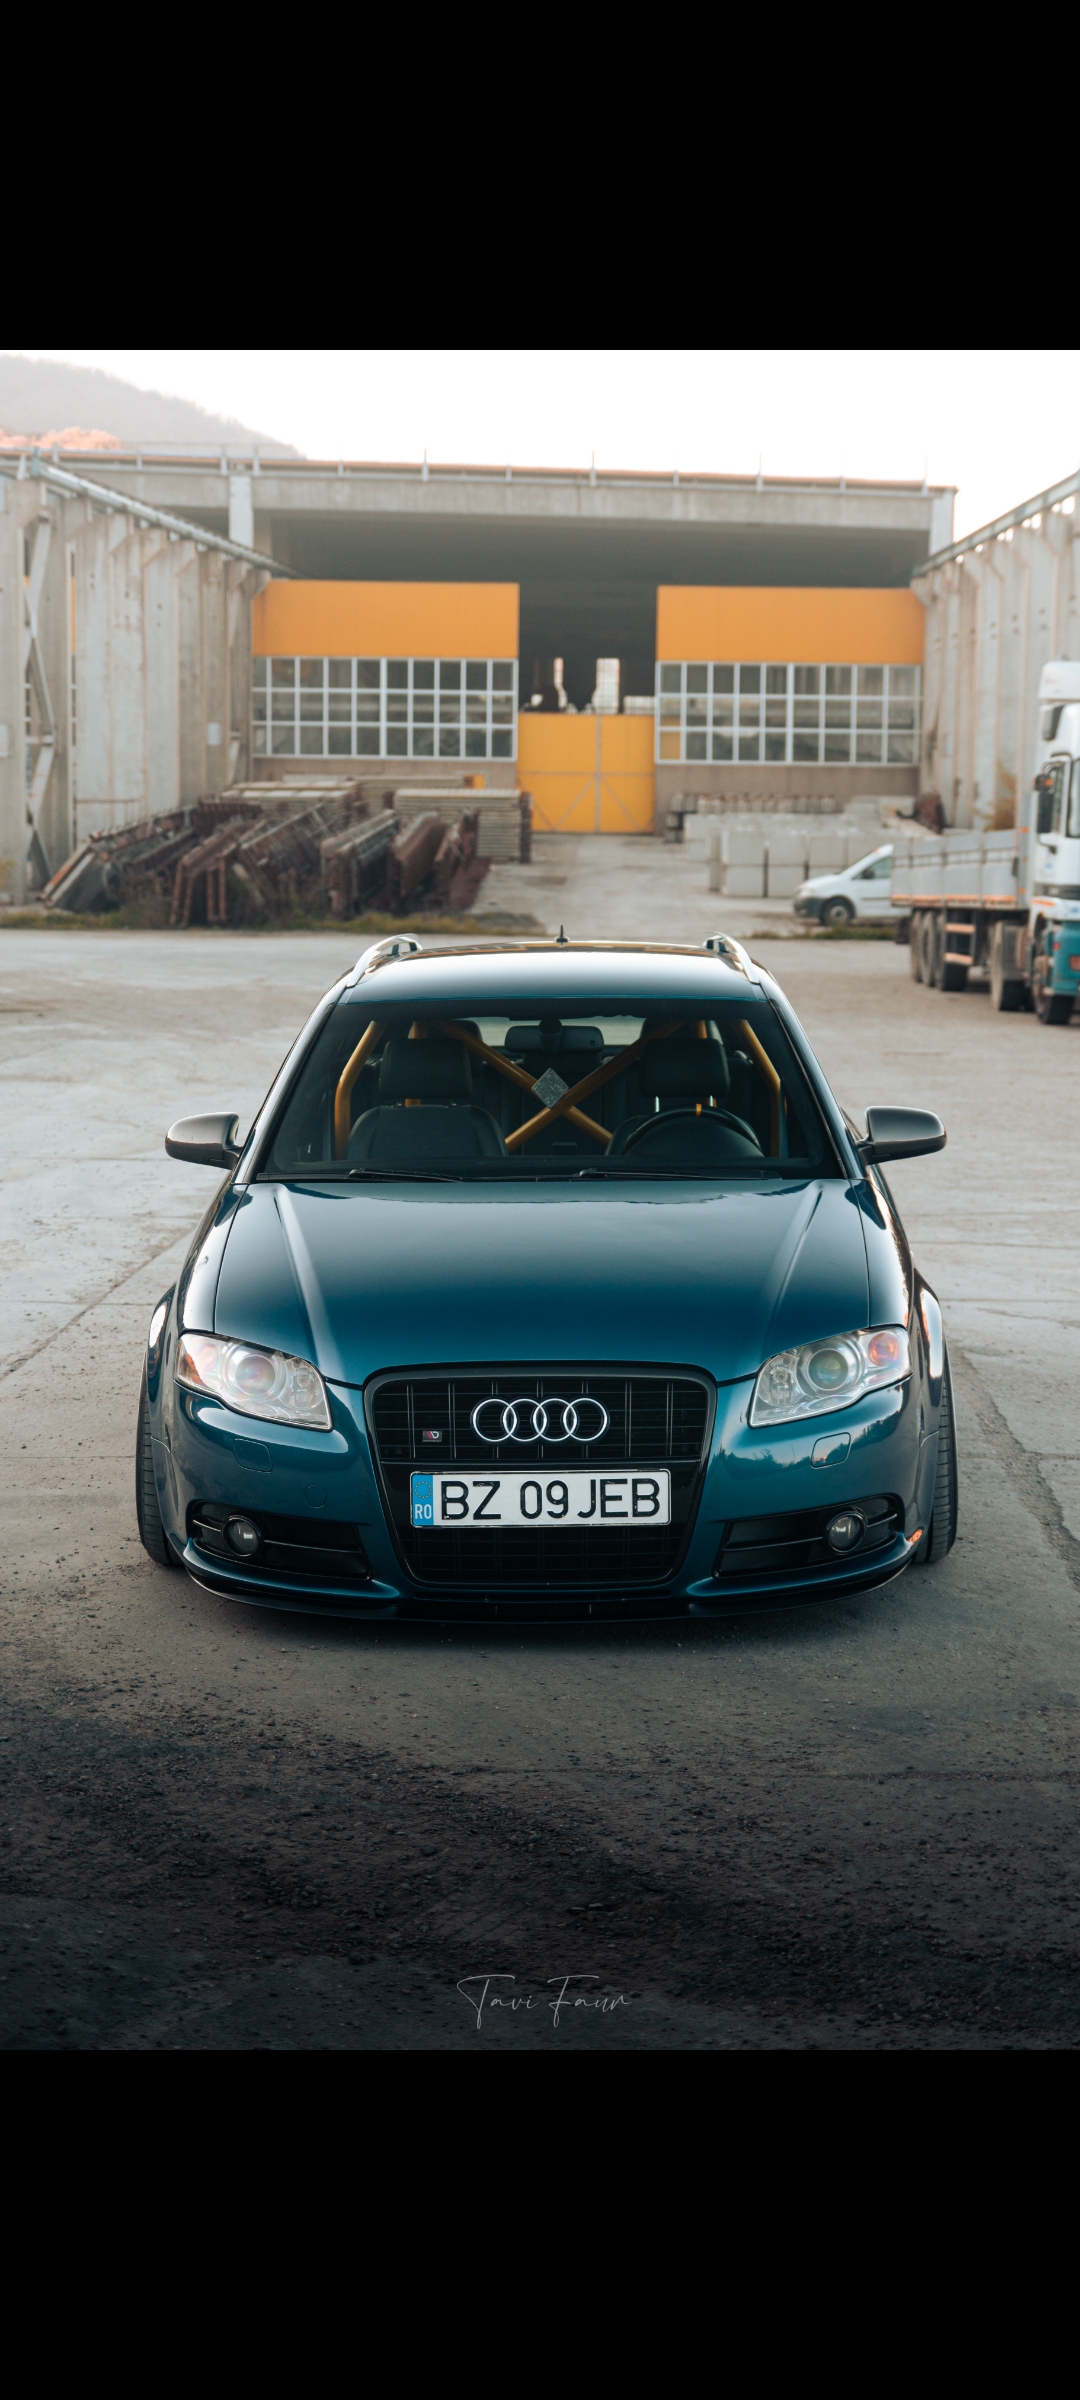 Audi B7 avant